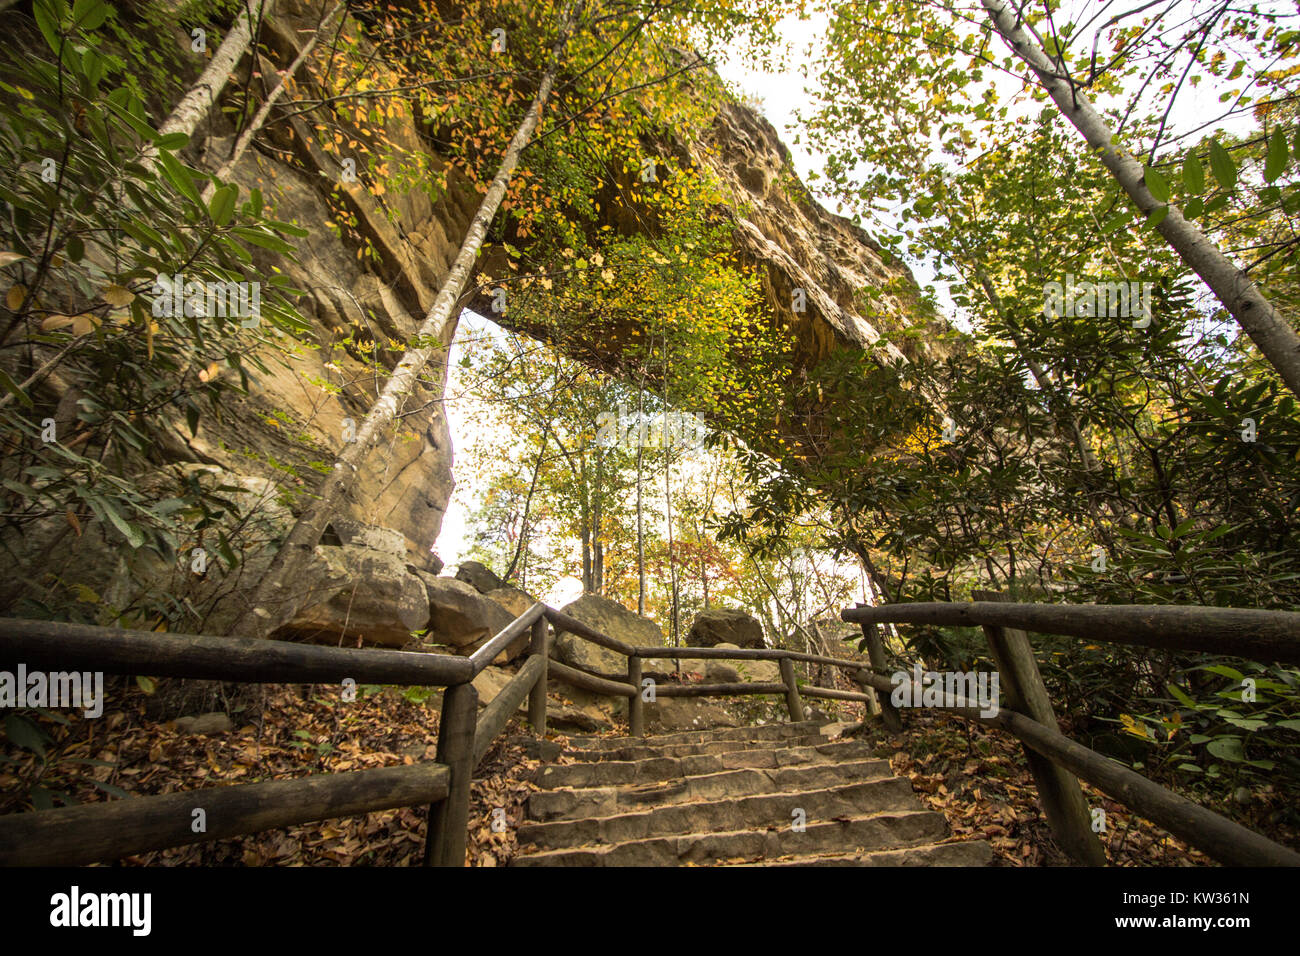  Preview Enregistrer Télécharger Kentucky State Parks Paysage. Voir et de sous l'arche de pierre dans la région de Natural Bridge State Park Banque D'Images